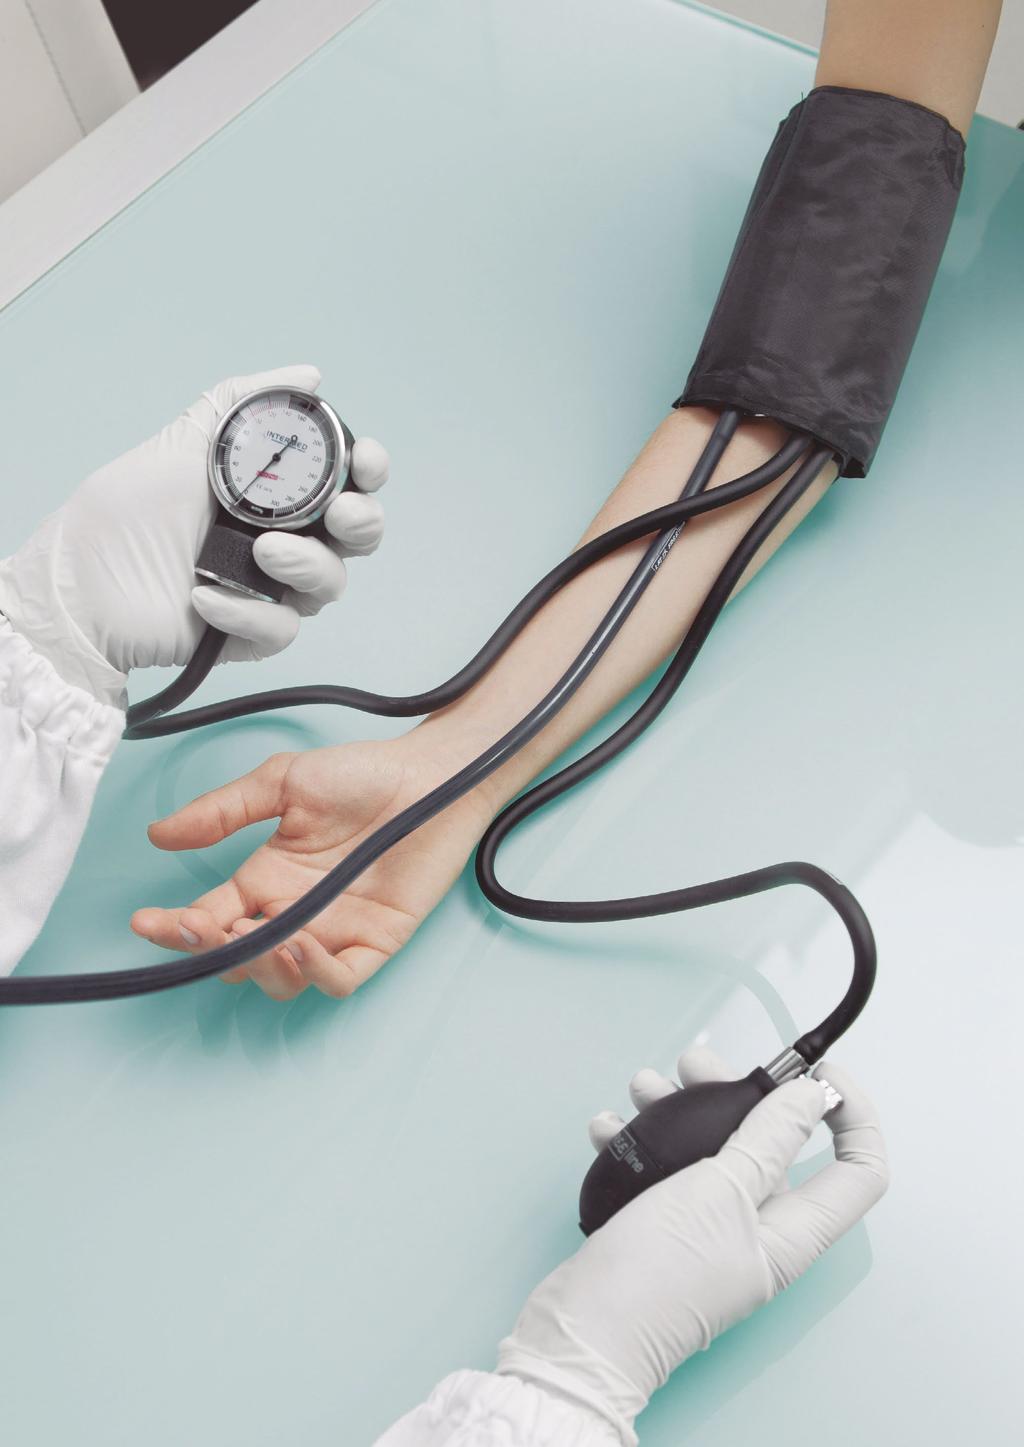 Esfigmomanómetros Es un instrumento médico empleado para la medición indirecta de la presión arterial proporcionando, por lo general, la